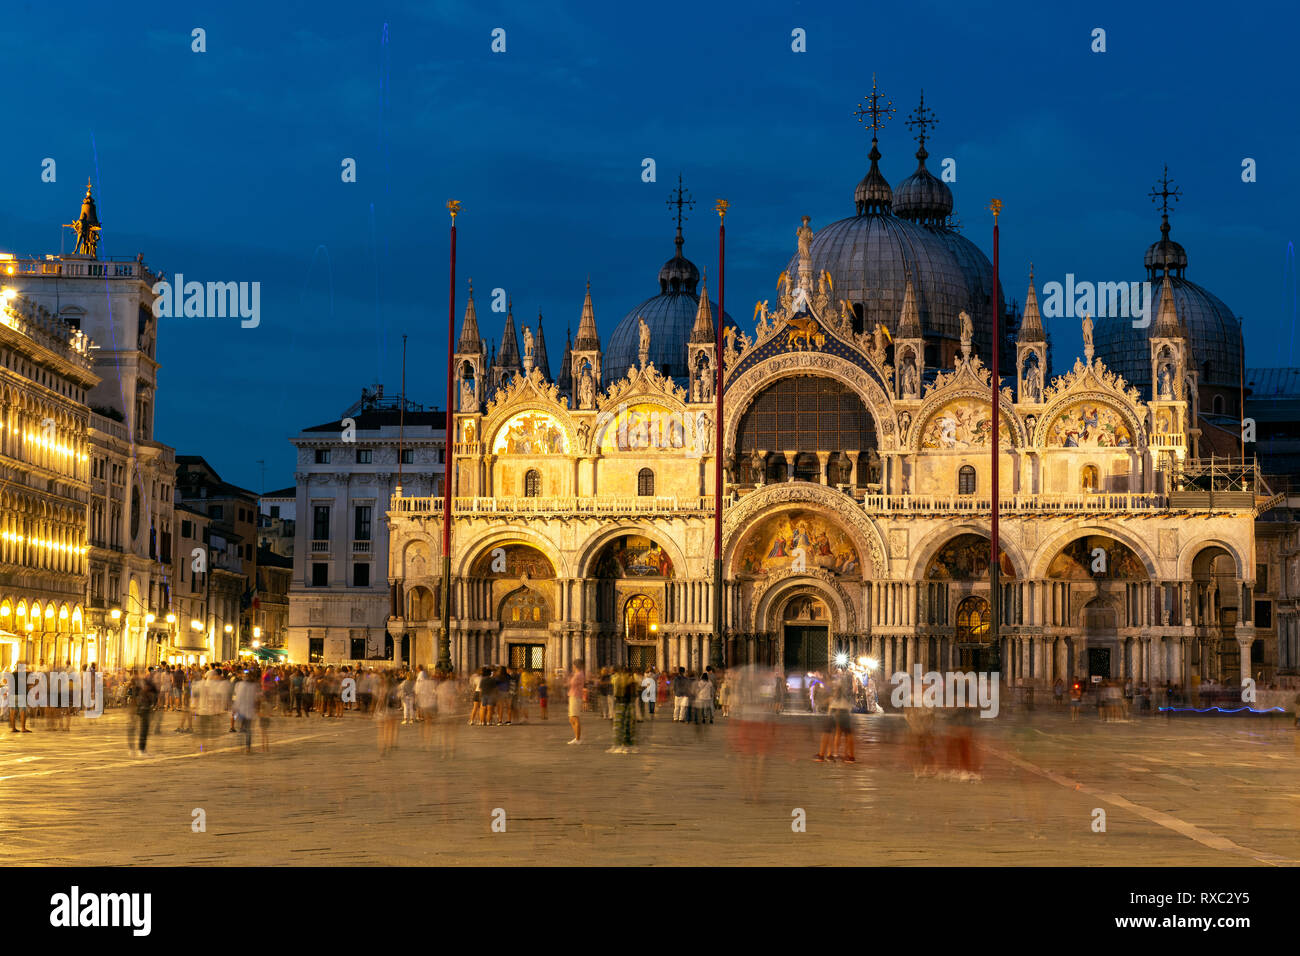 Basilica di San Marco, Venice (Venezia), Italy Stock Photo